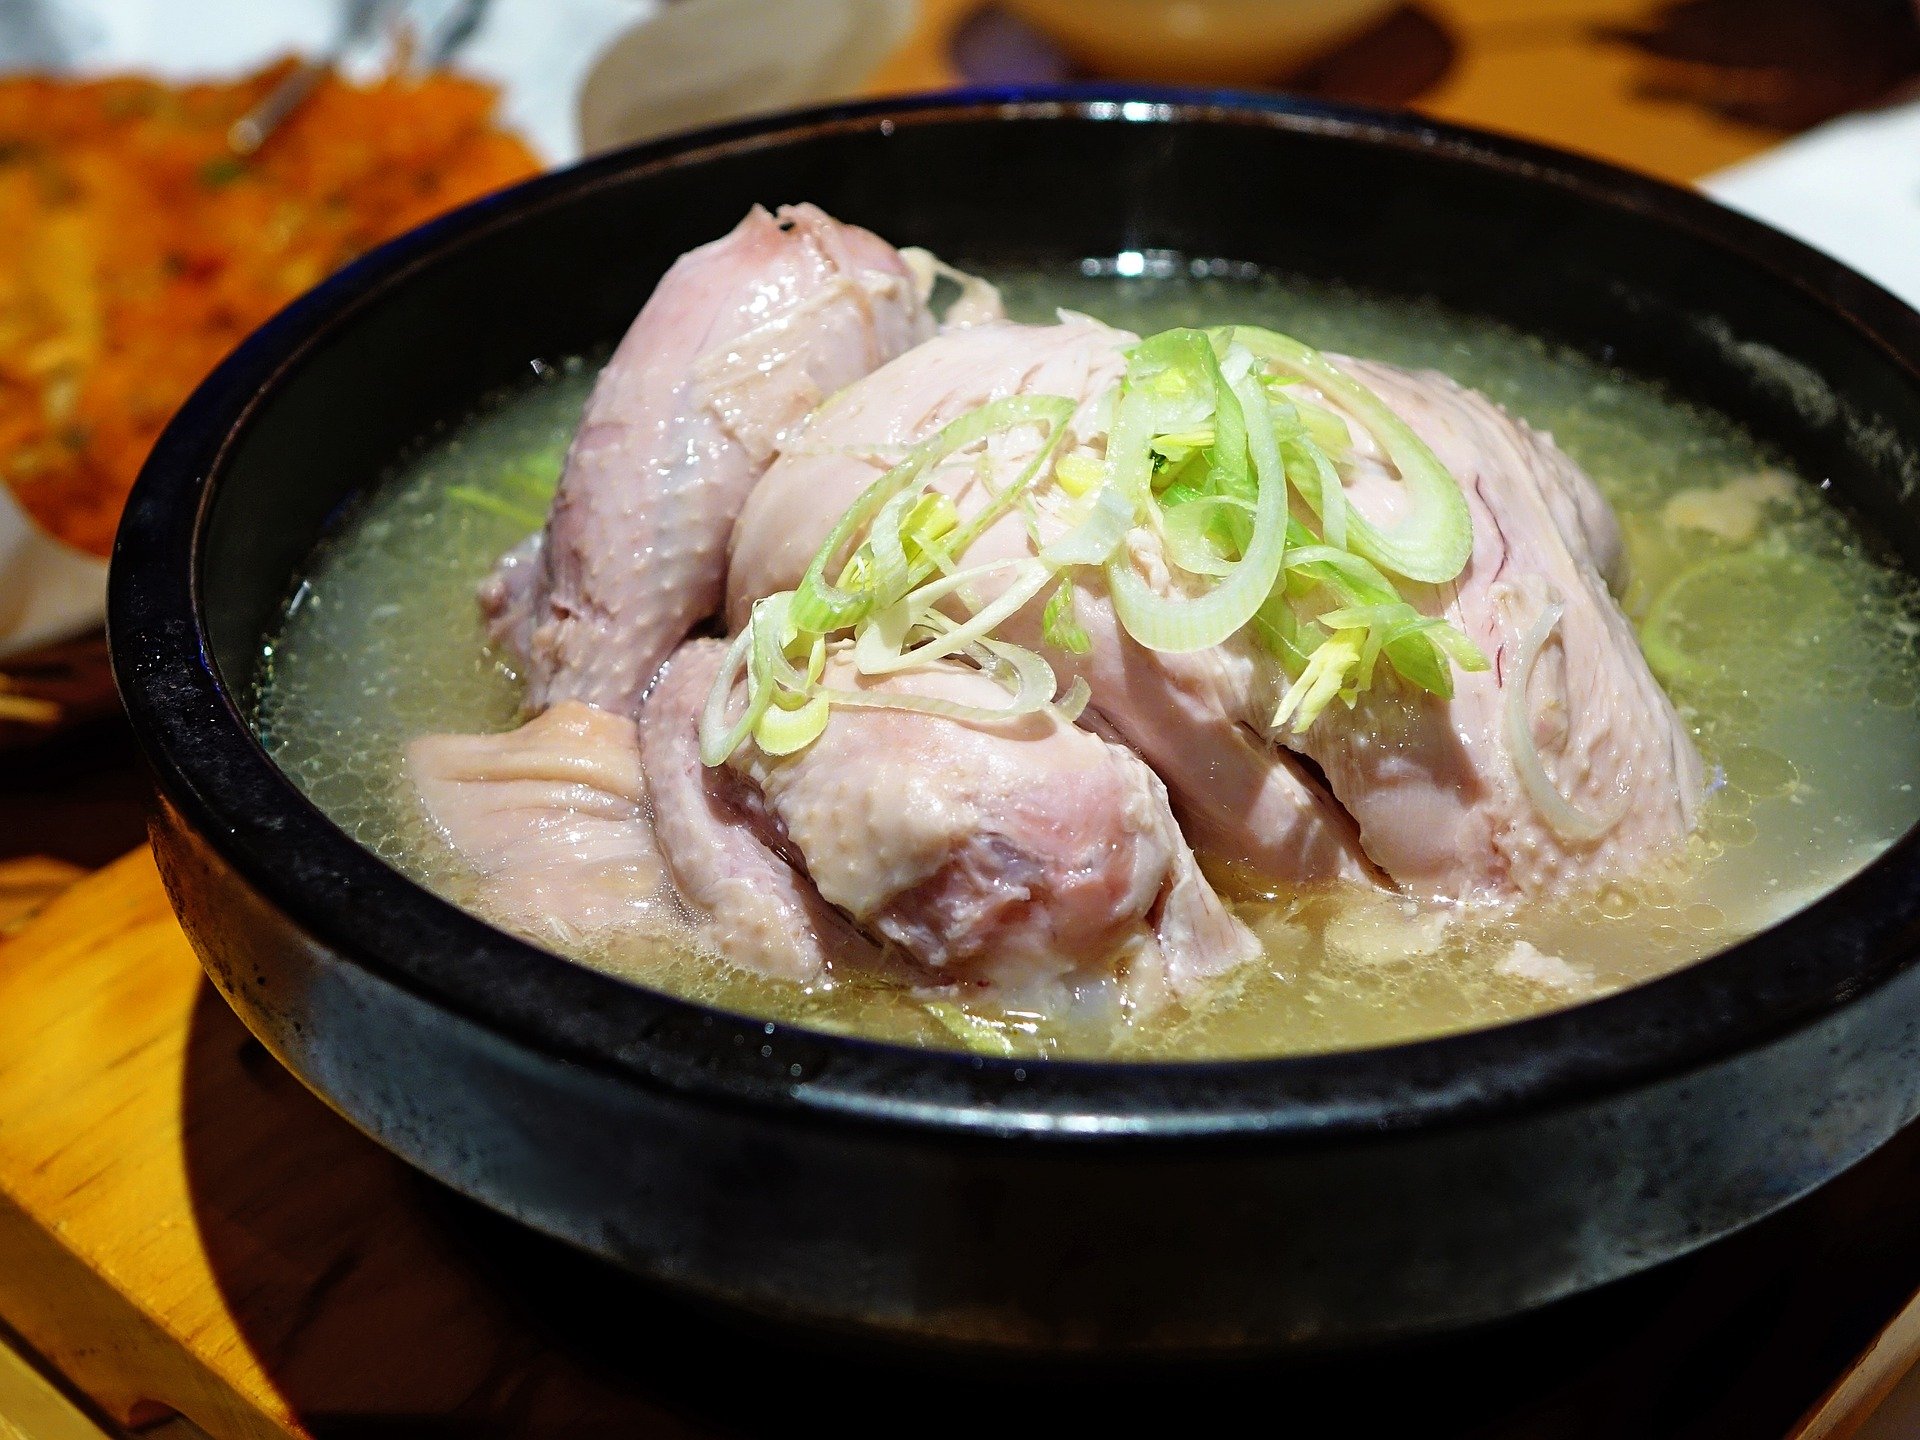 ما سر "حساء الدجاج" في مواجهة نزلات البرد؟